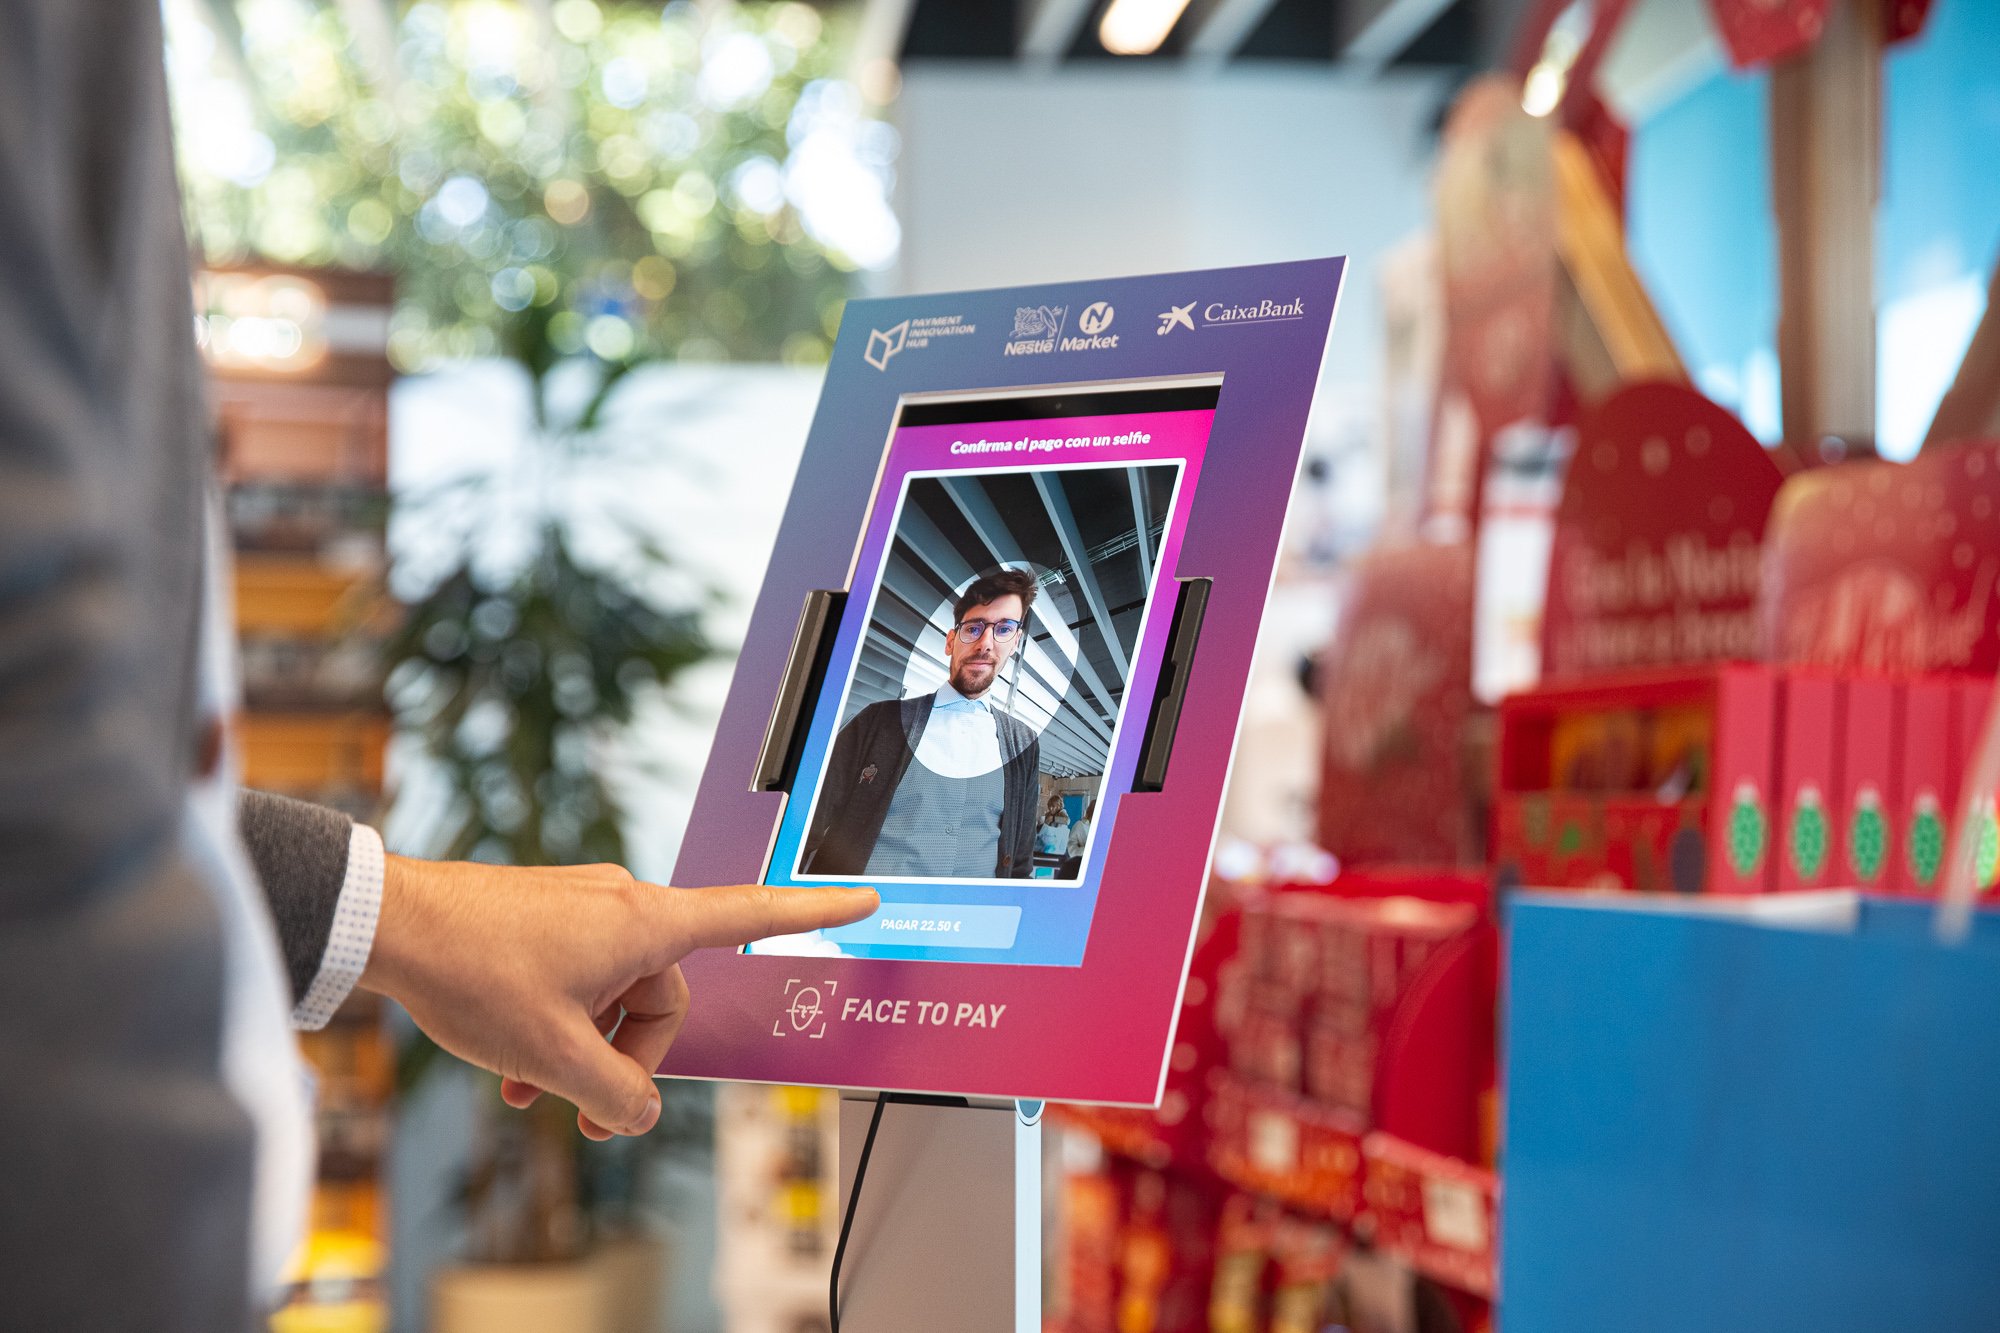 La botiga Nestlé d'Esplugues ja permet pagar amb reconeixement facial